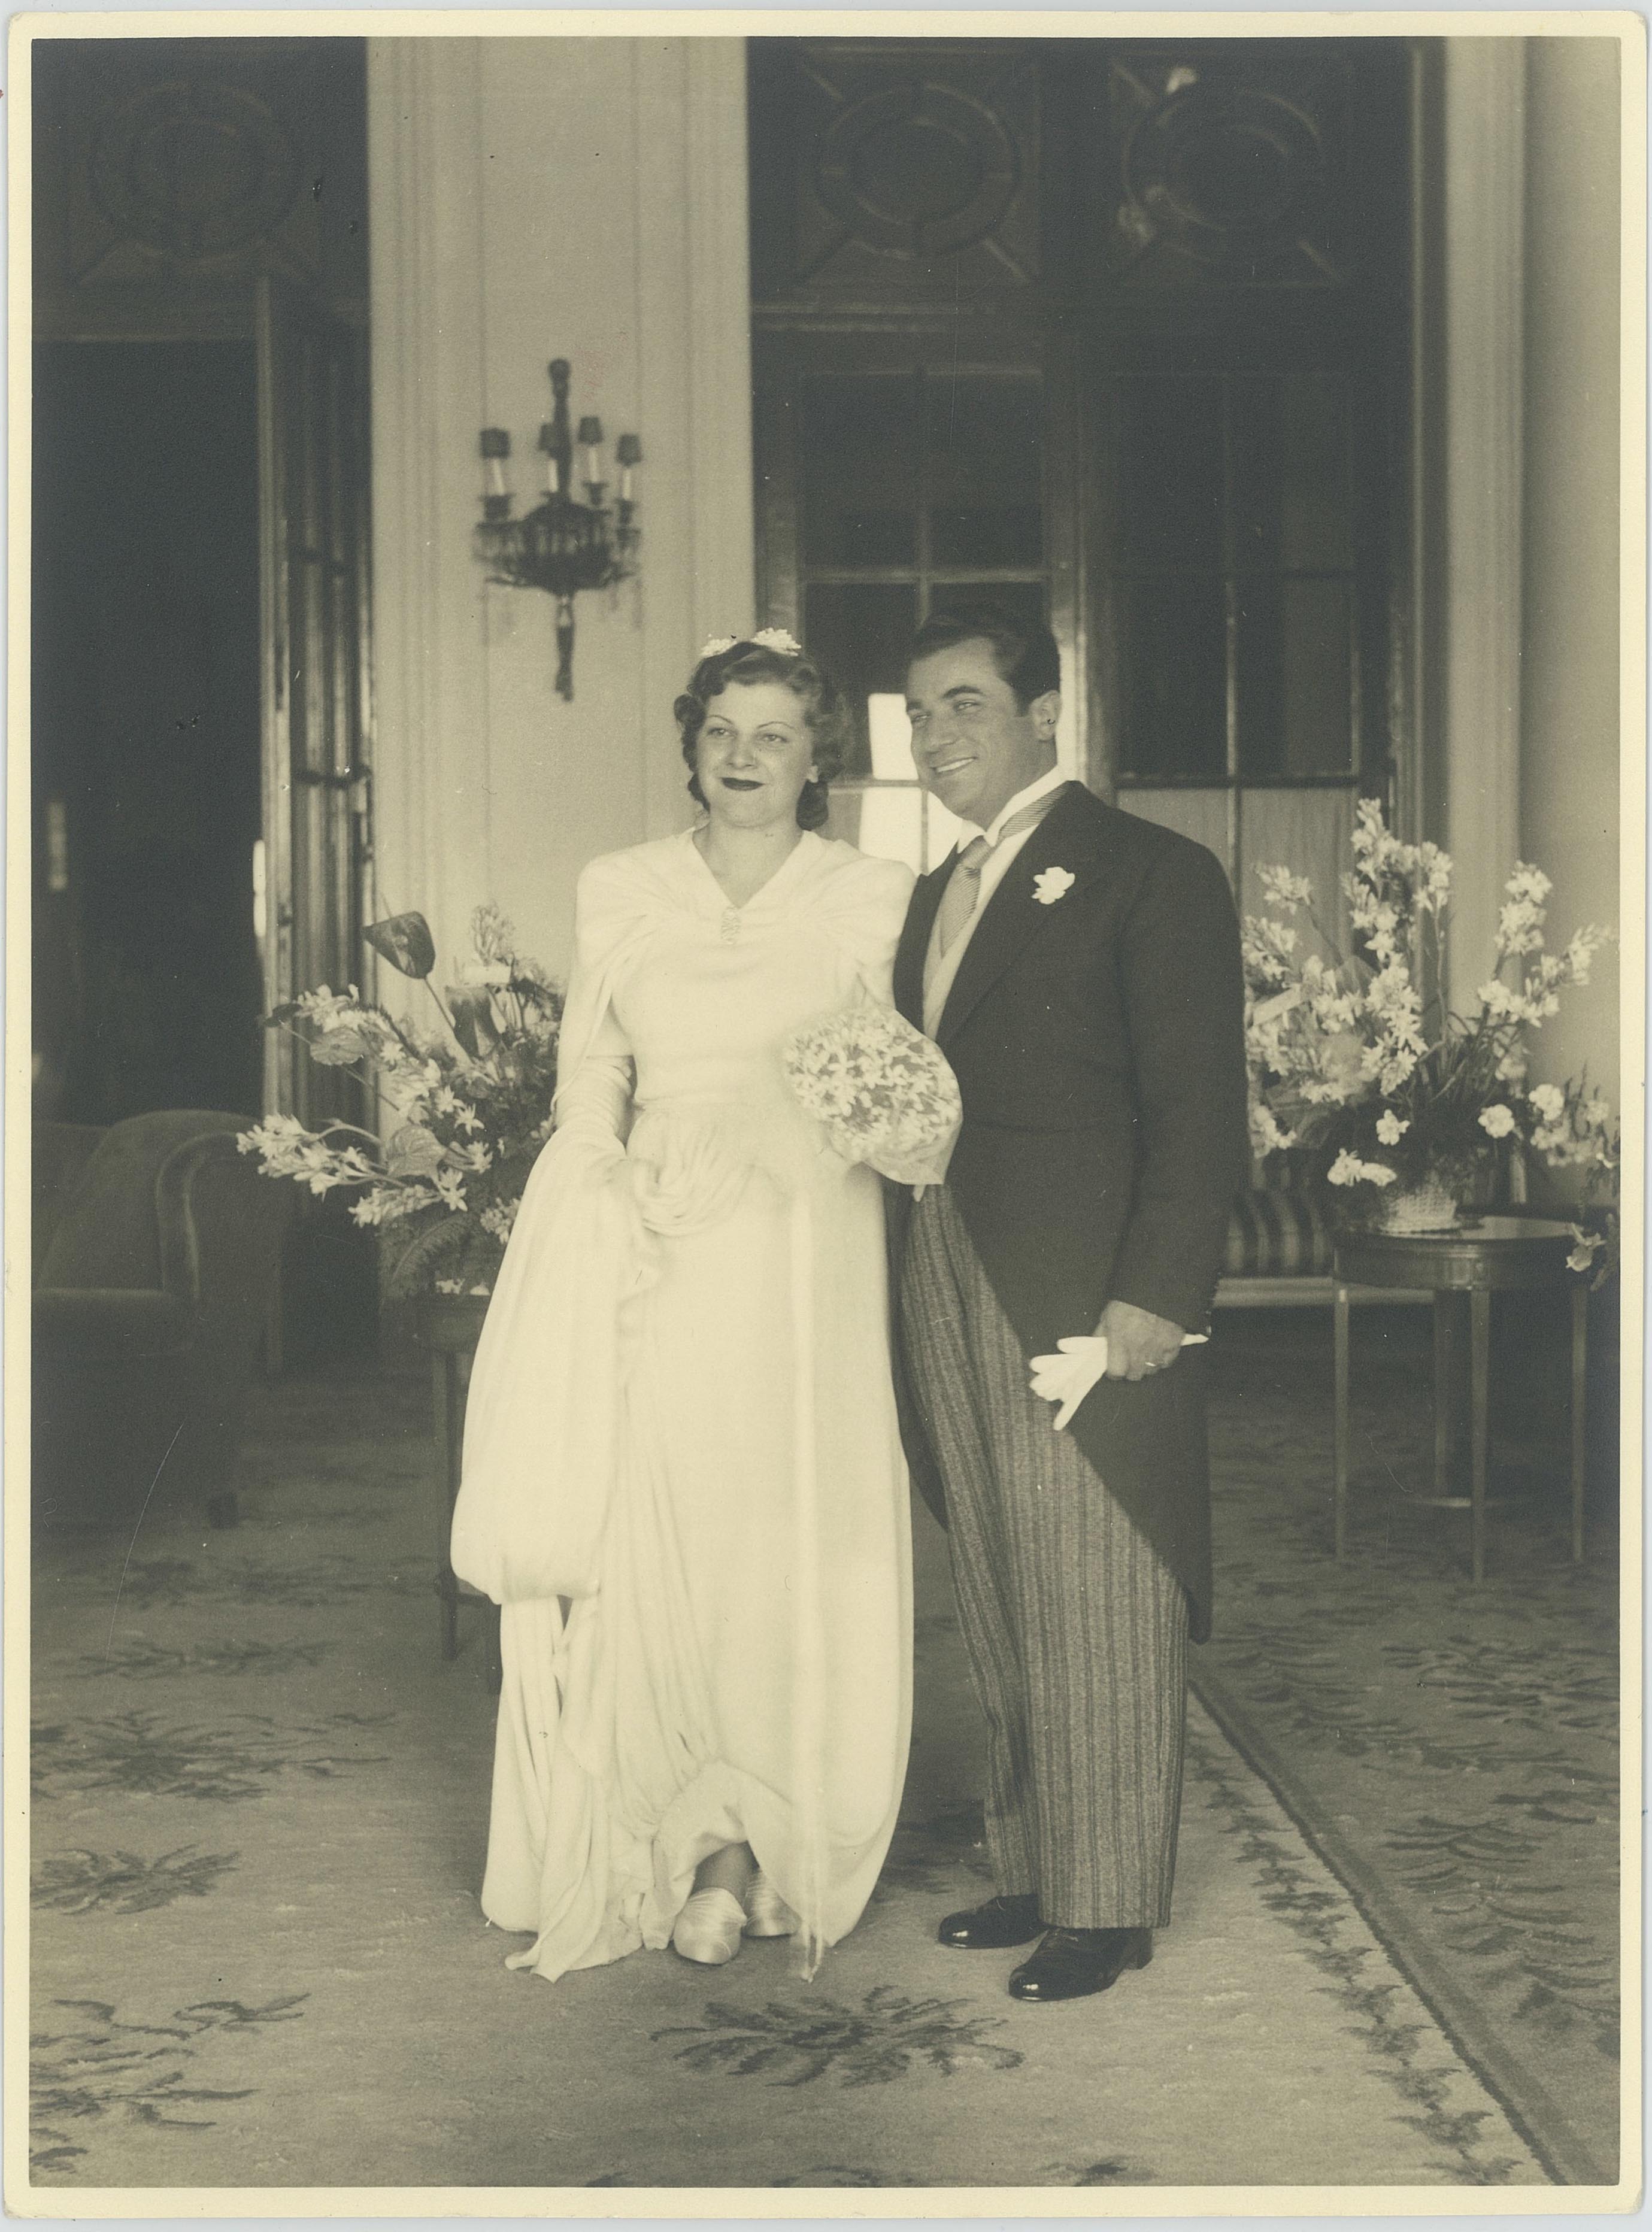 Il matrimonio di Salvatore e Wanda Ferragamo il 9 novembre 1940, Museo Salvatore Ferragamo, Firenze